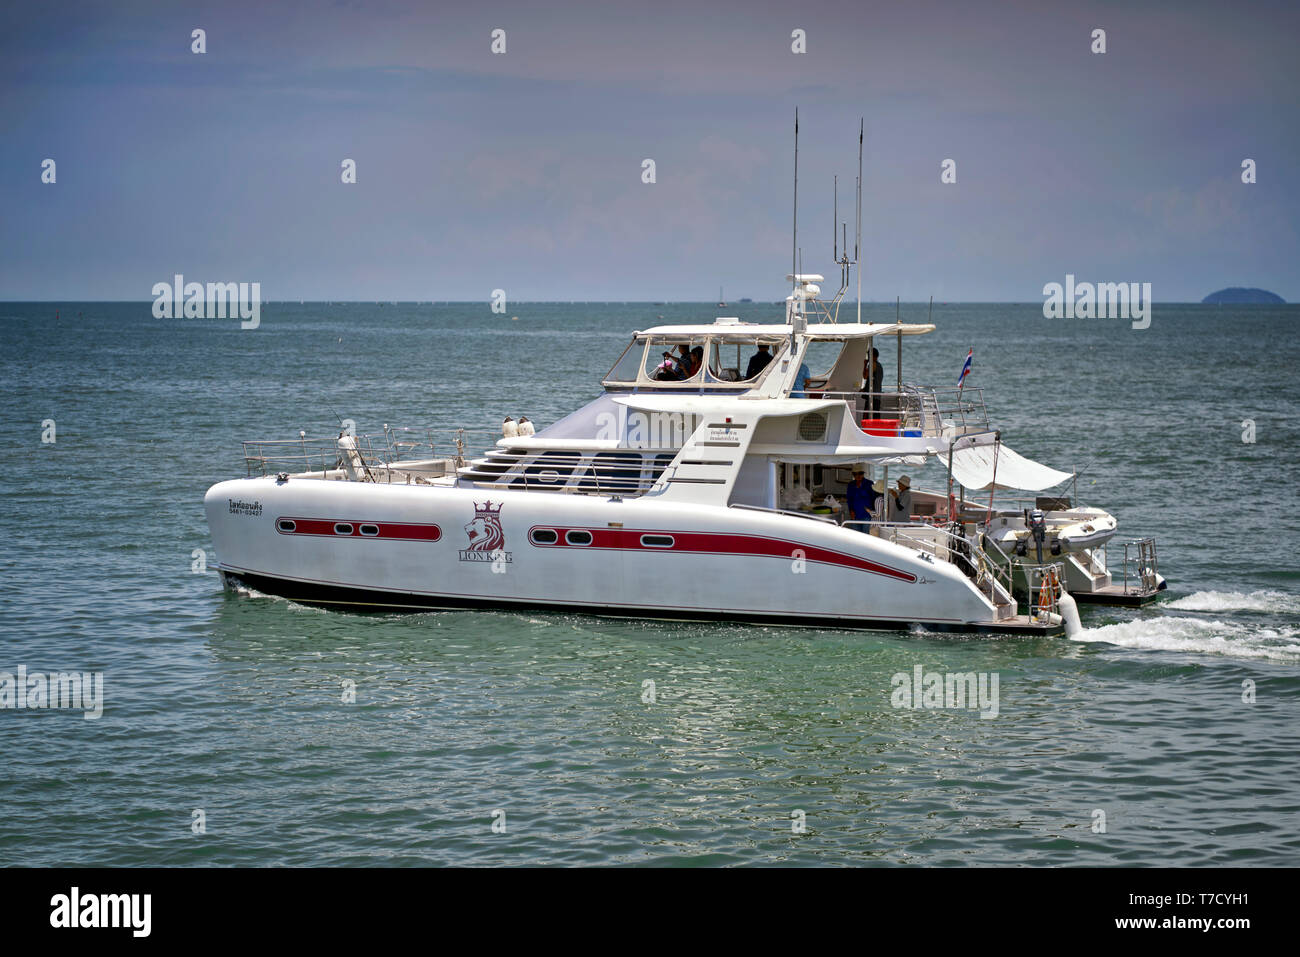 Catamaran tourist boat. Thailand tourism. Southeast Asia Stock Photo